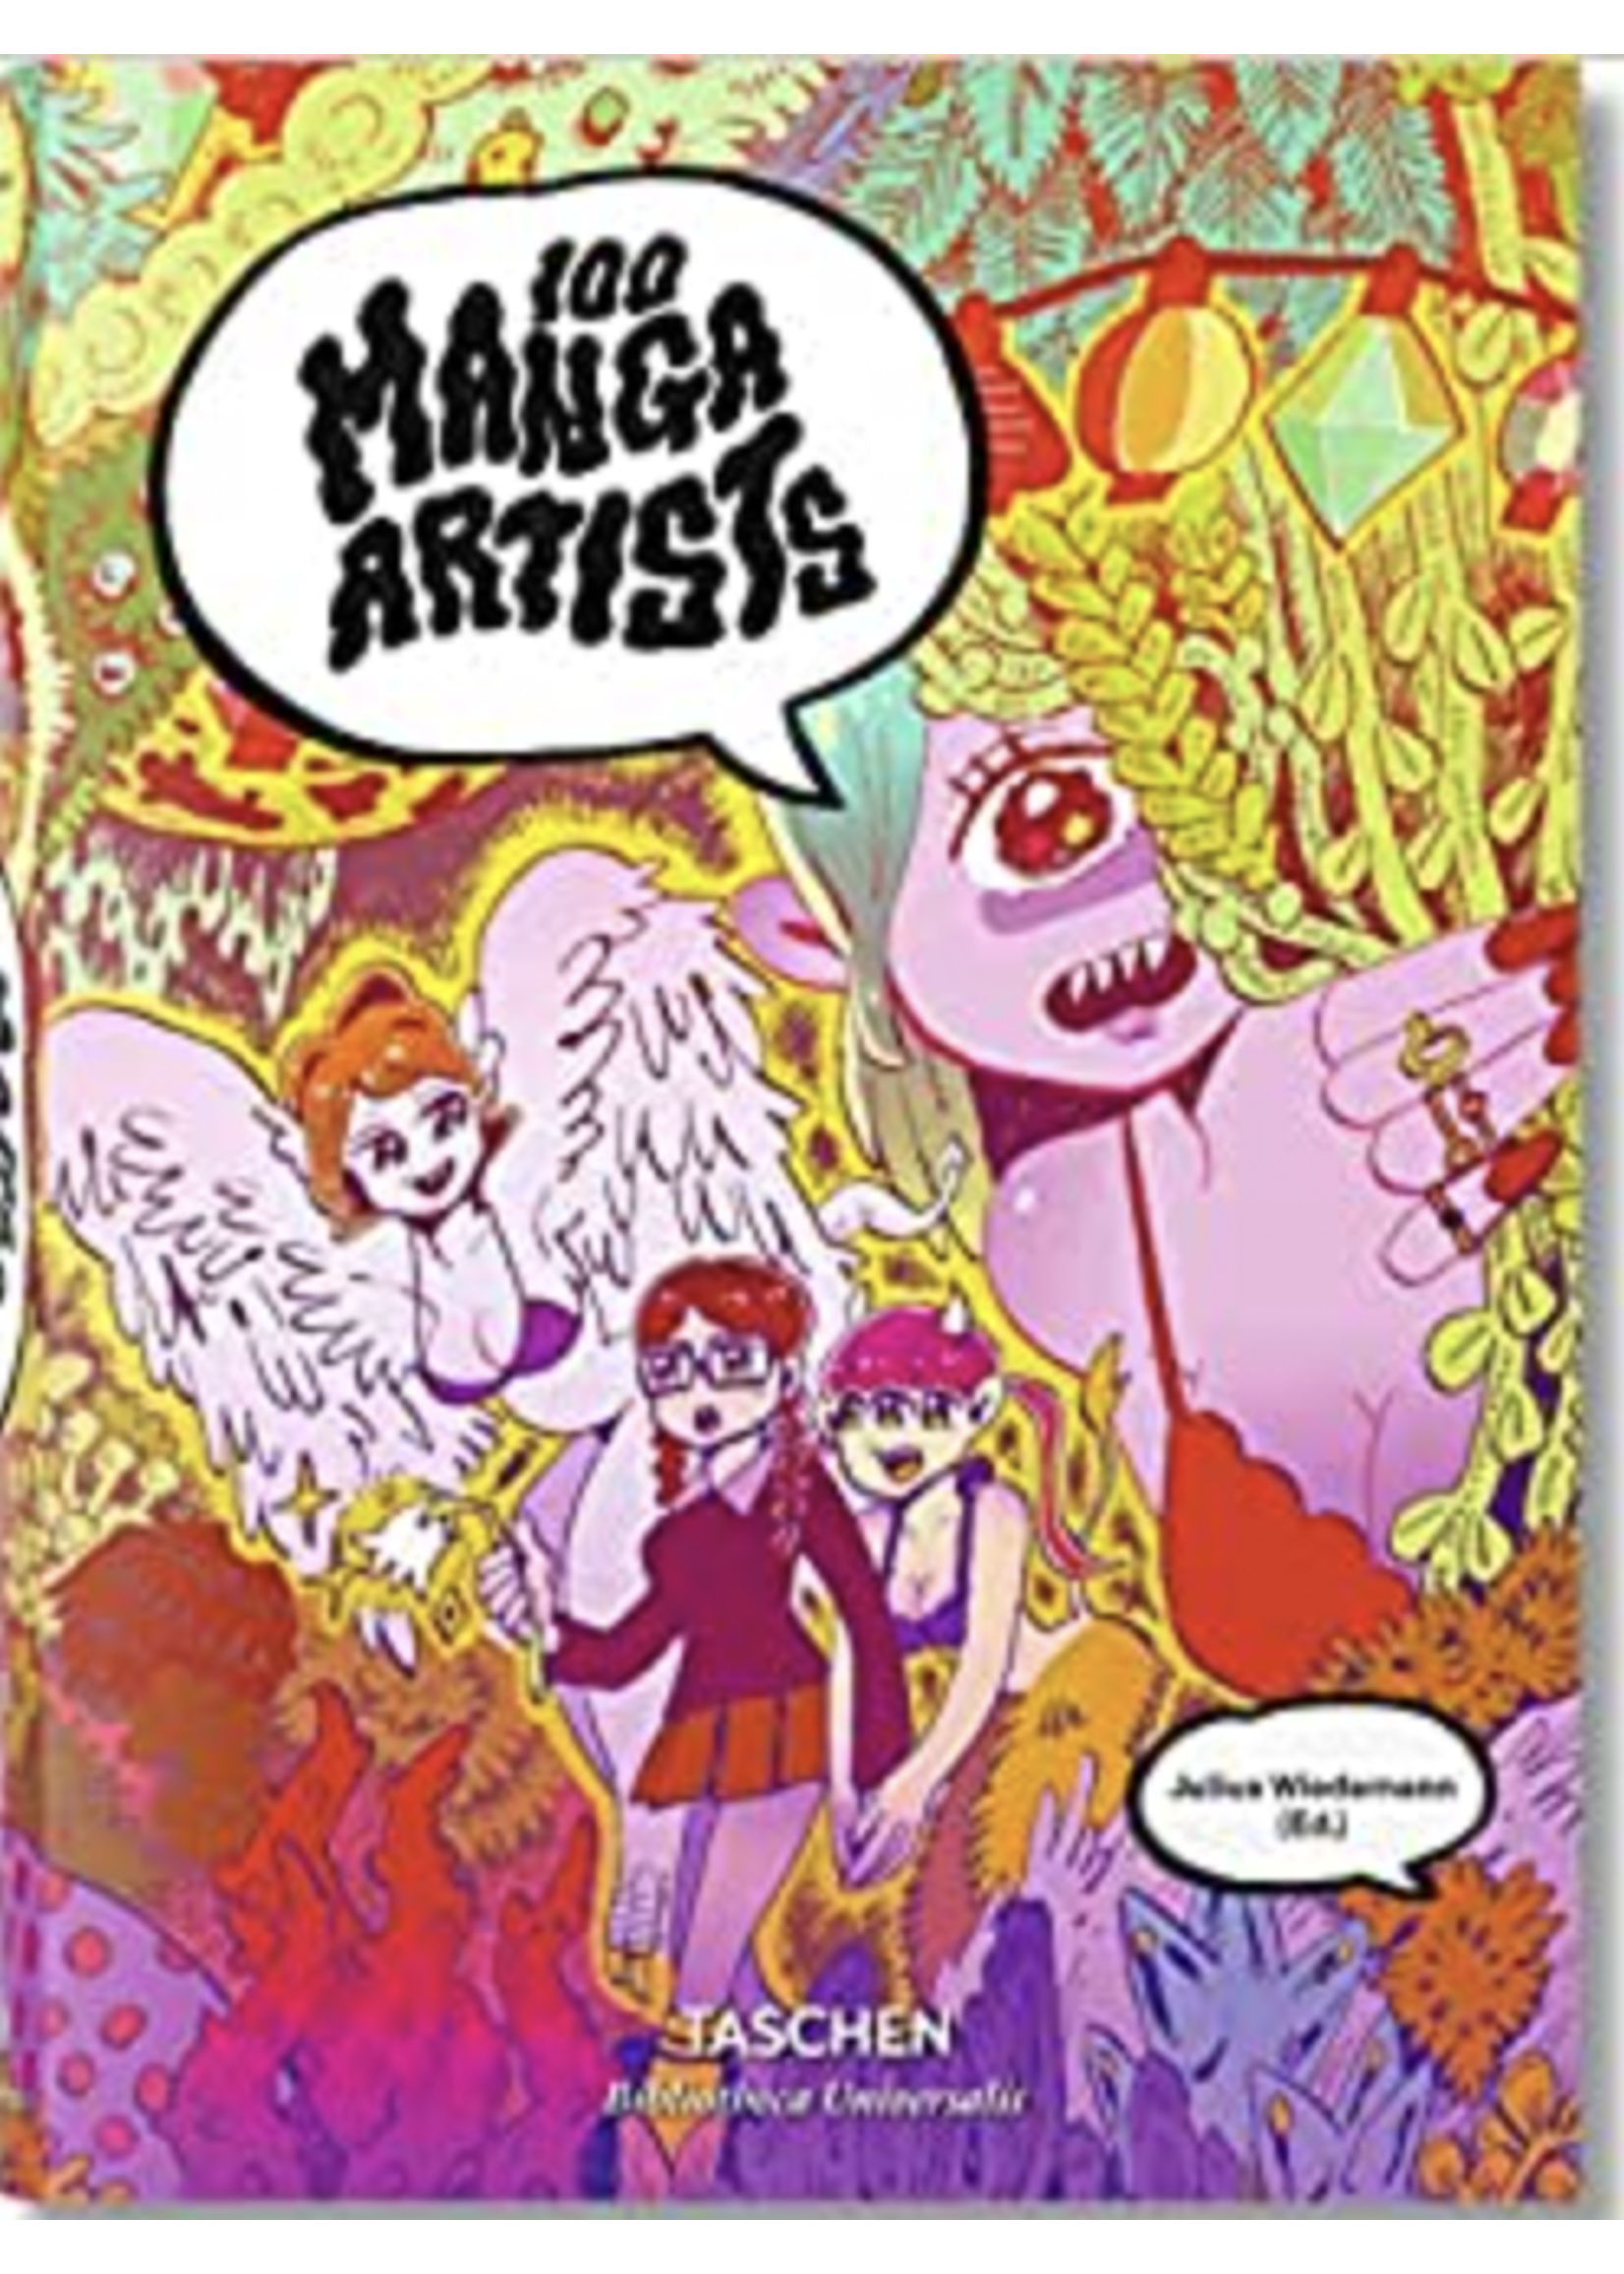 ingram 100 Manga Artists Book